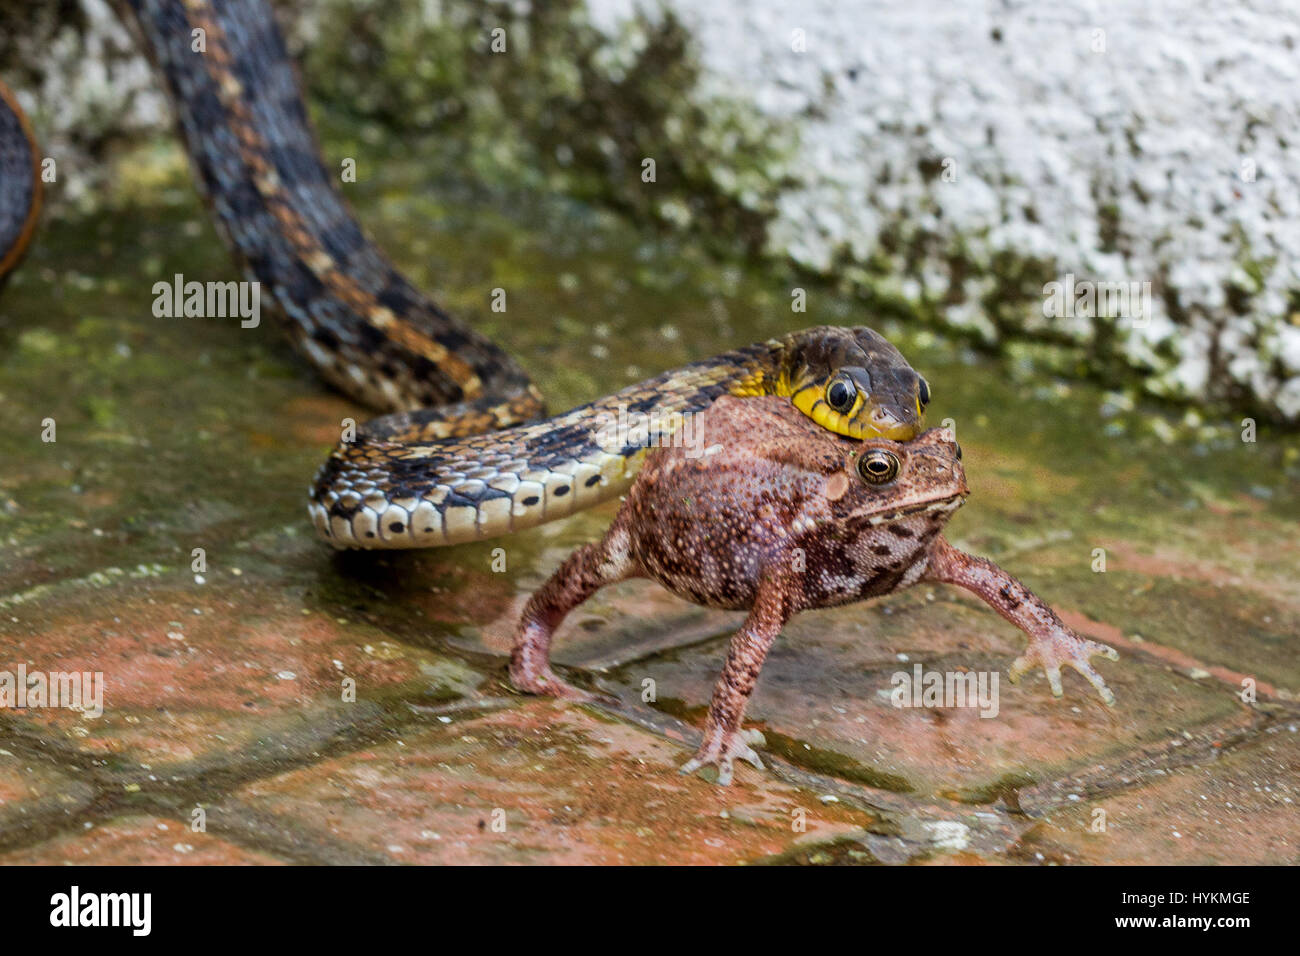 DAANG Wald, Indien: Diese Schlange hatte sicherlich einen Frosch im Hals  wie es Darm-wrenchingly seine Beute zum Erstaunen der eine vorübergehende  verschlang Firmenchef. Beeindruckende Bilder zeigen natürliche  Nahrungskette in Aktion wie die